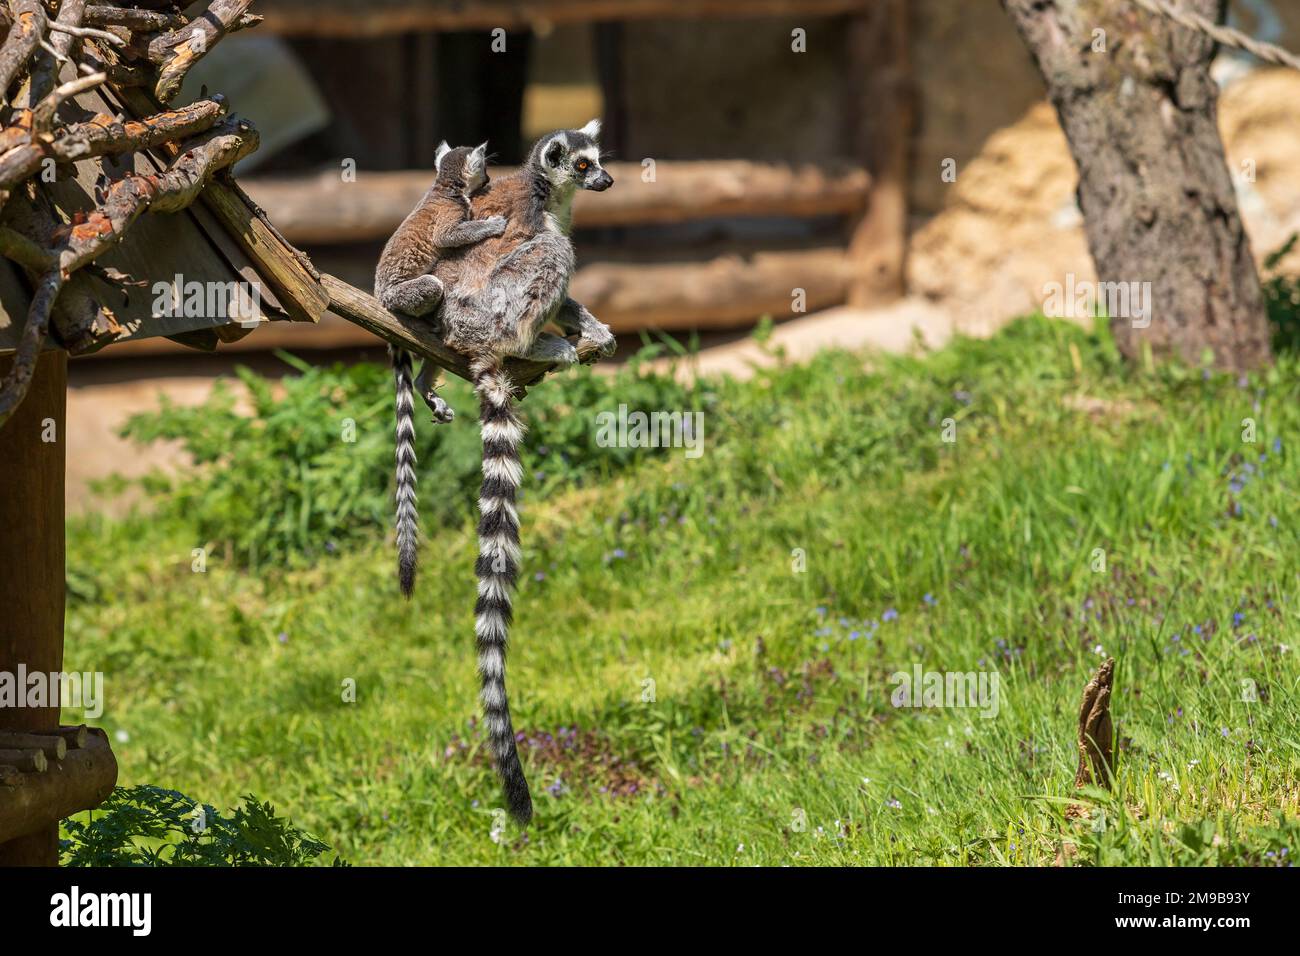 Lemur dalla coda ad anello con un cucciolo seduto nei rami. La femmina ha la sua giovane. Foto Stock